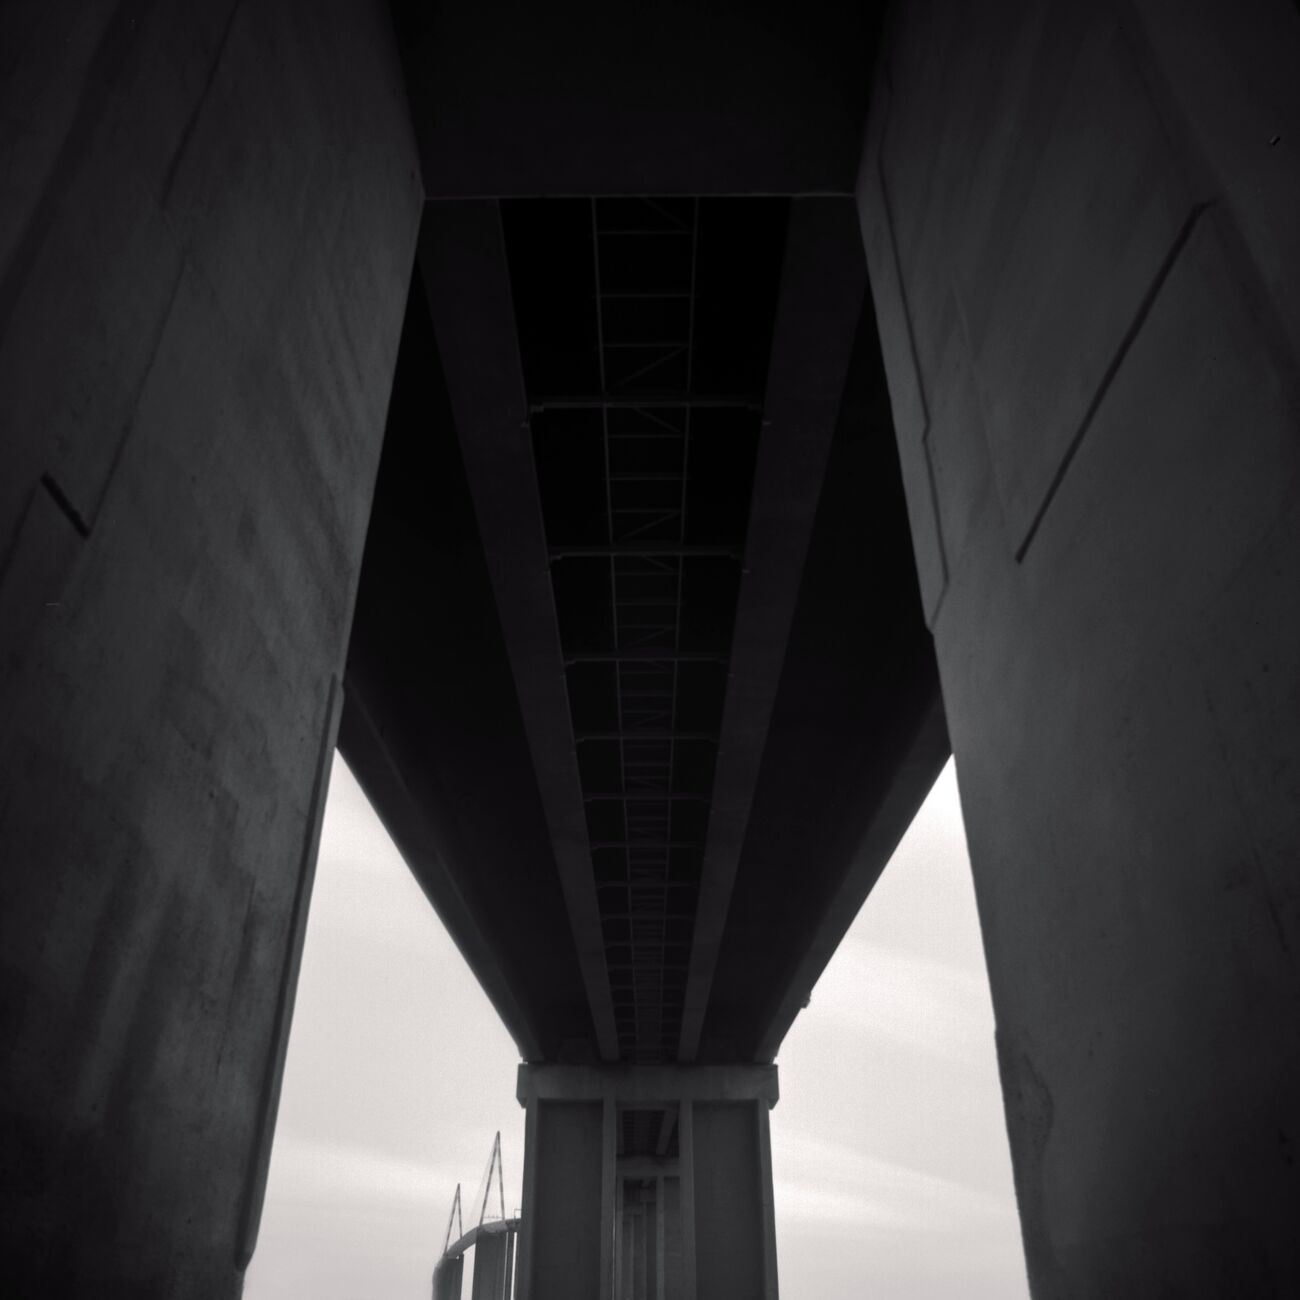 Saint-Nazaire Bridge, Etude 2, Trignac, France. Février 2021. Ref-11455 - Denis Olivier Photographie